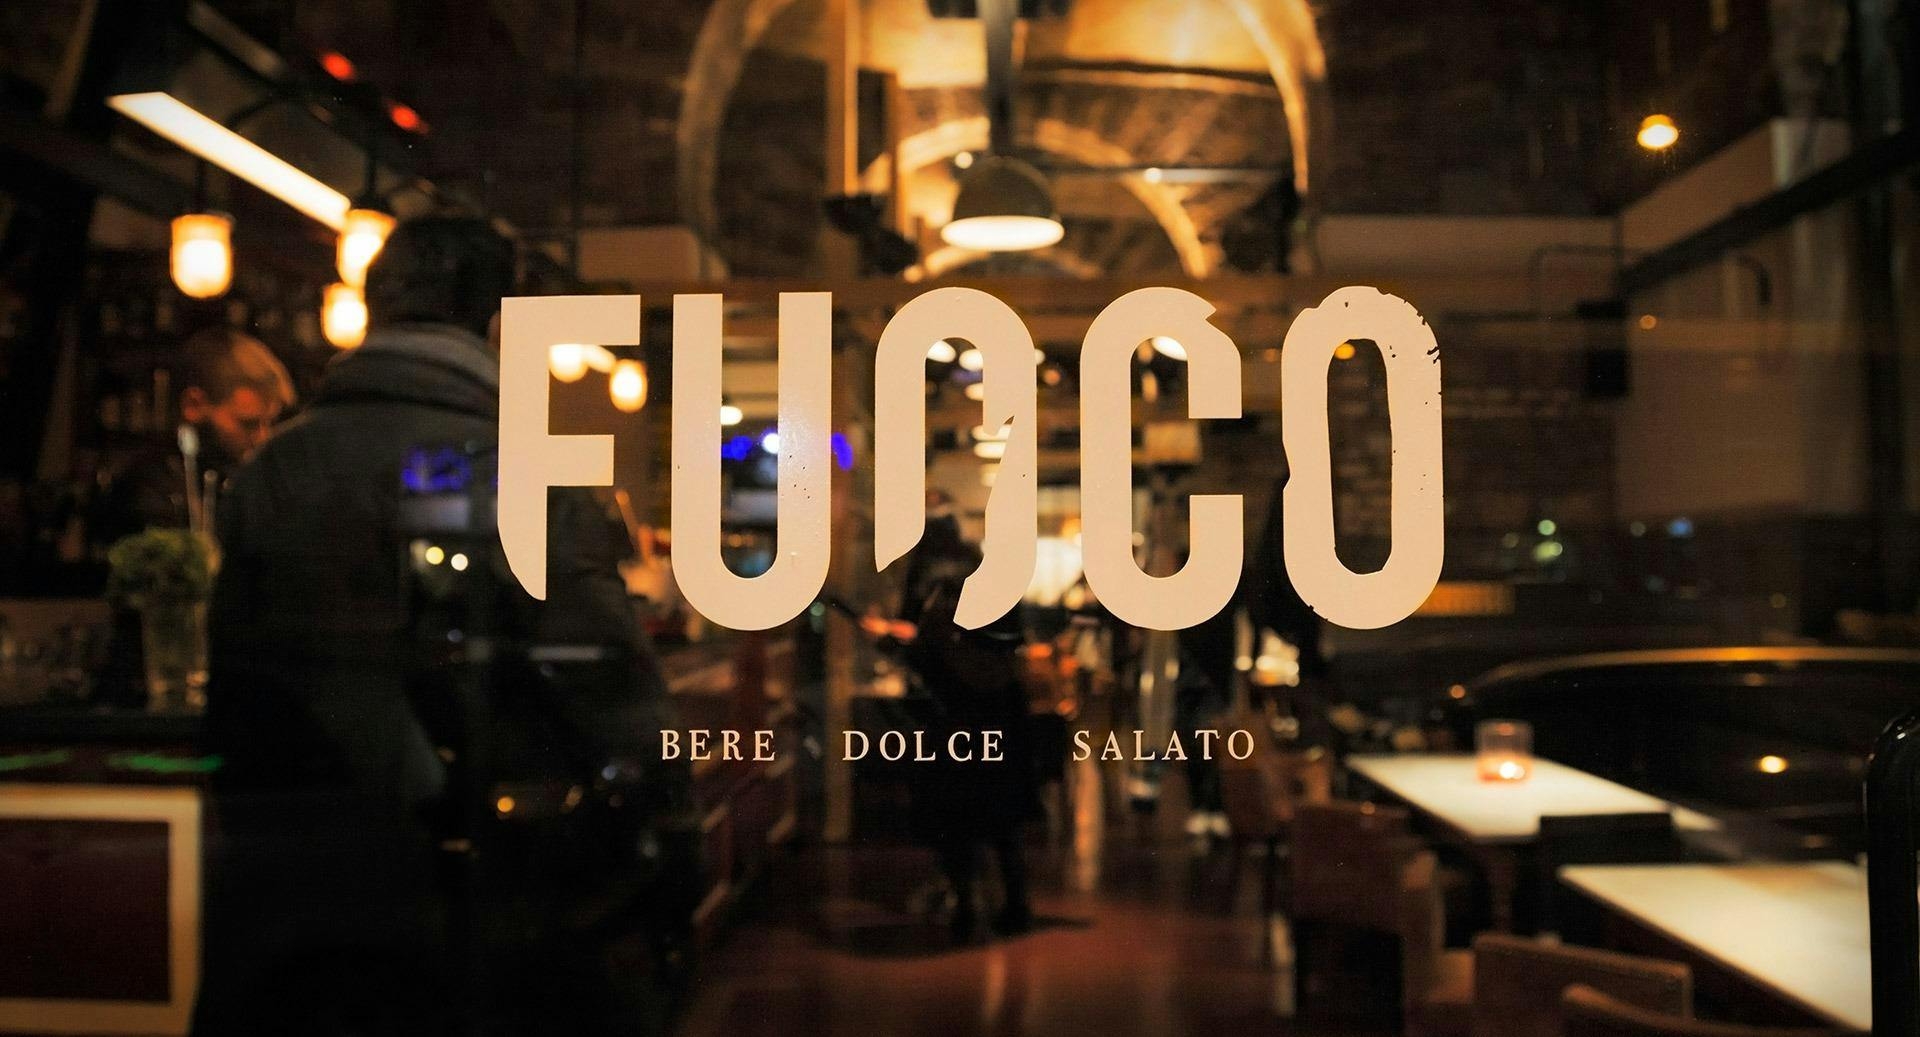 Photo of restaurant Fuoco Bere • Dolce • Salato in Prati, Rome